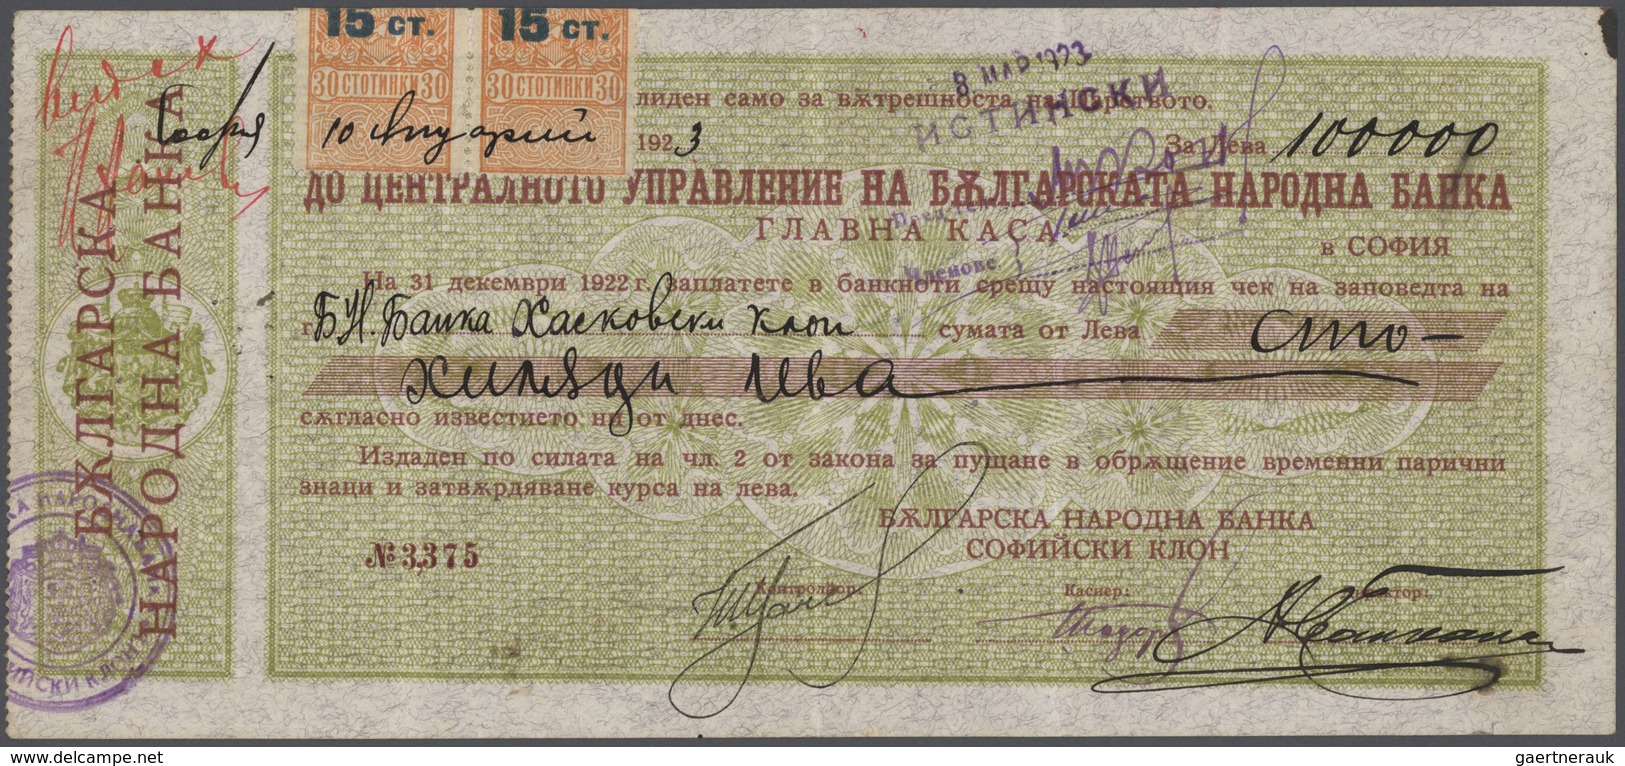 01216 Bulgaria / Bulgarien: 100.000 Leva 1922 P. 33C, 5 Vertical Folds, Handling In Paper, Pinholes At Lef - Bulgaria